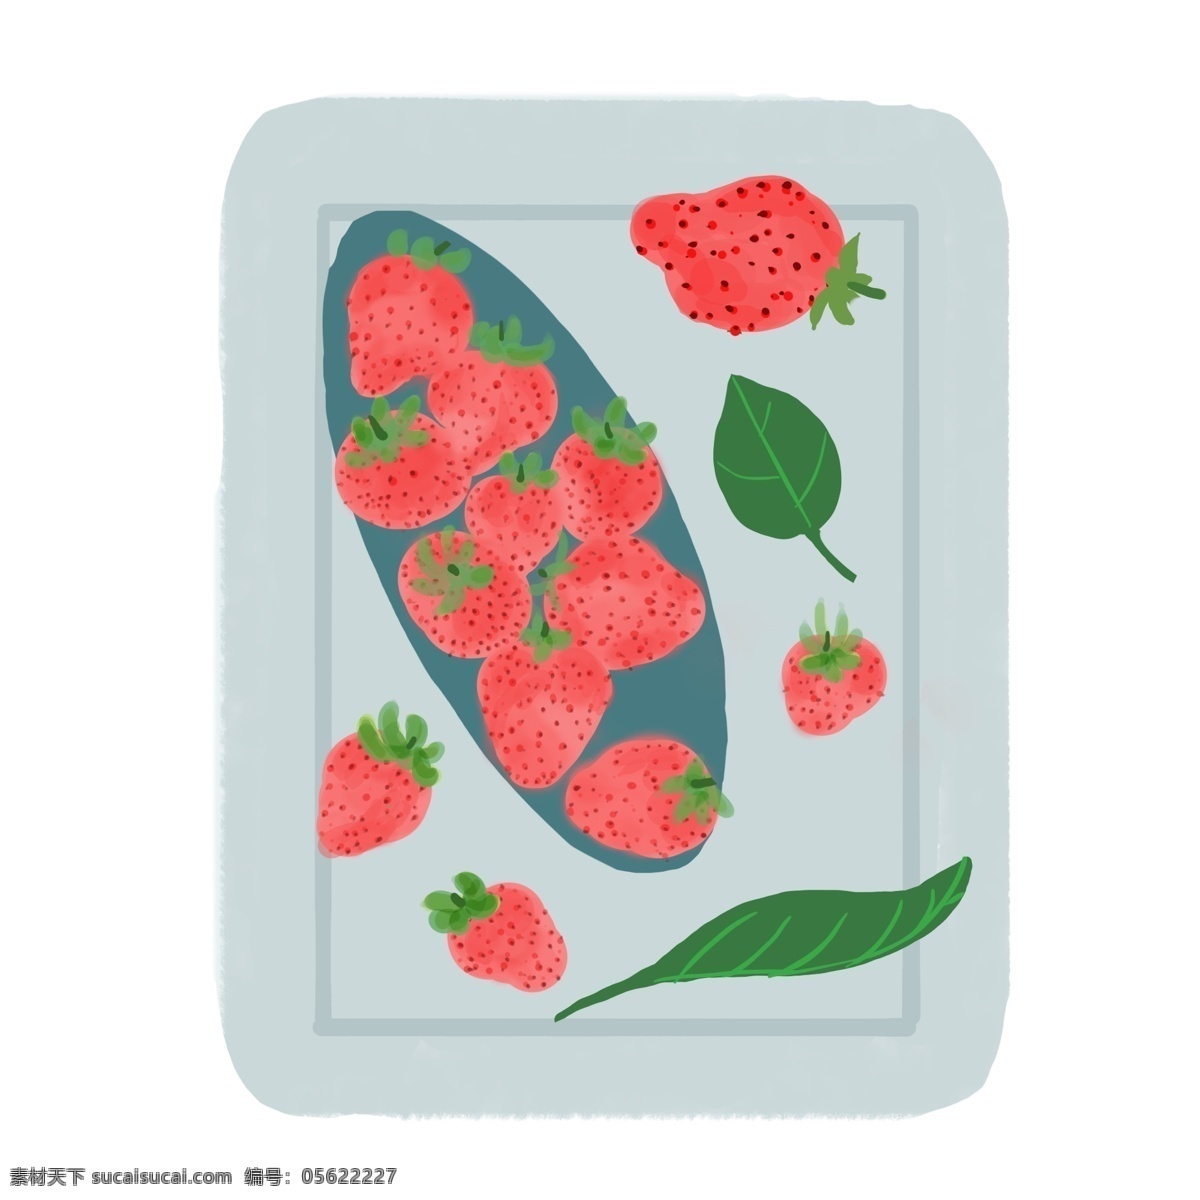 手绘 新鲜 草莓 插画 进口的草莓 卡通插画 手绘草莓插画 有机的草莓 红色的草莓 新鲜的草莓